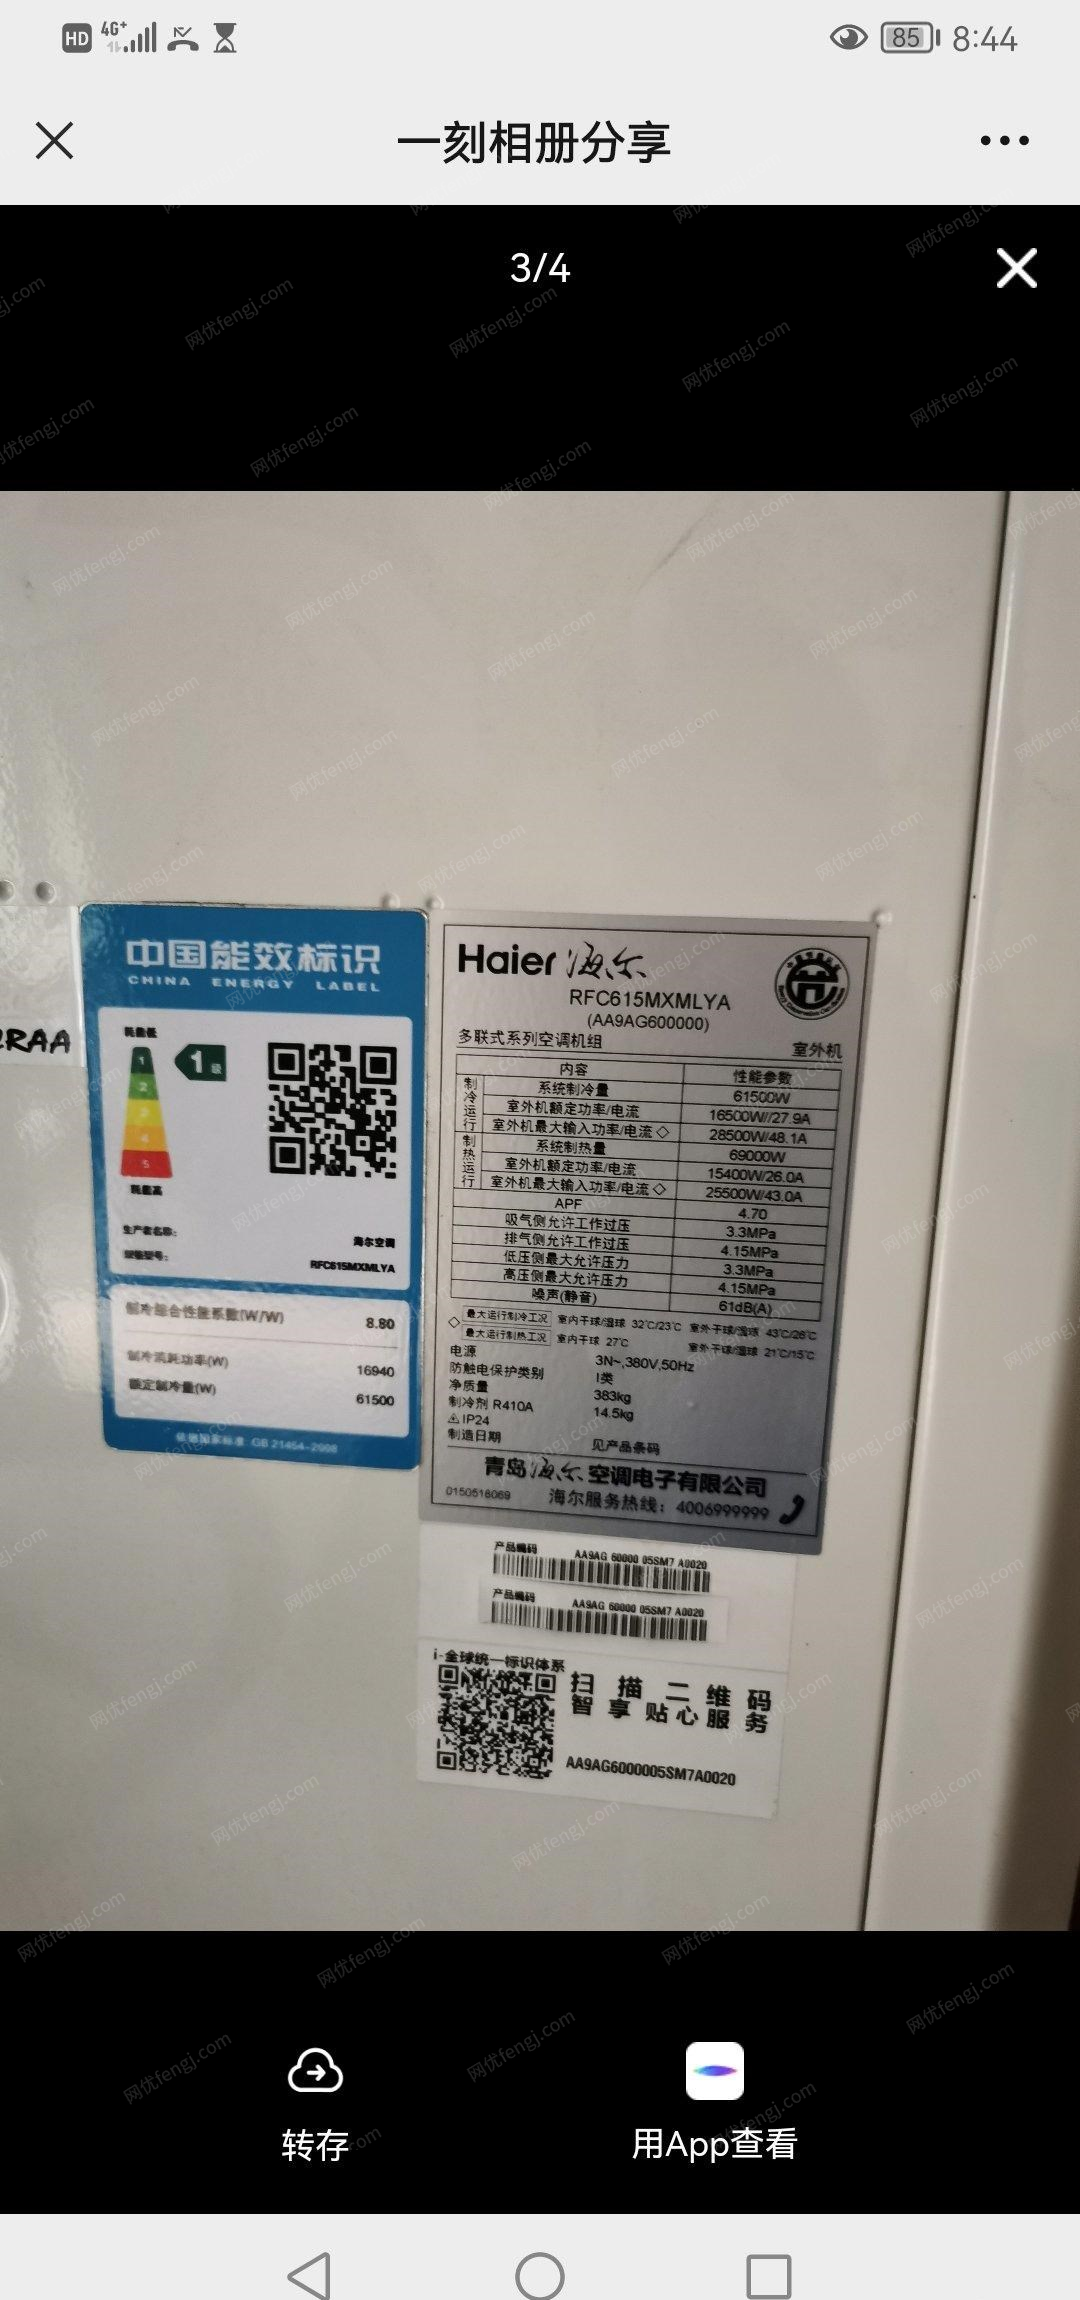 北京昌平区海尔中央空调主机出售